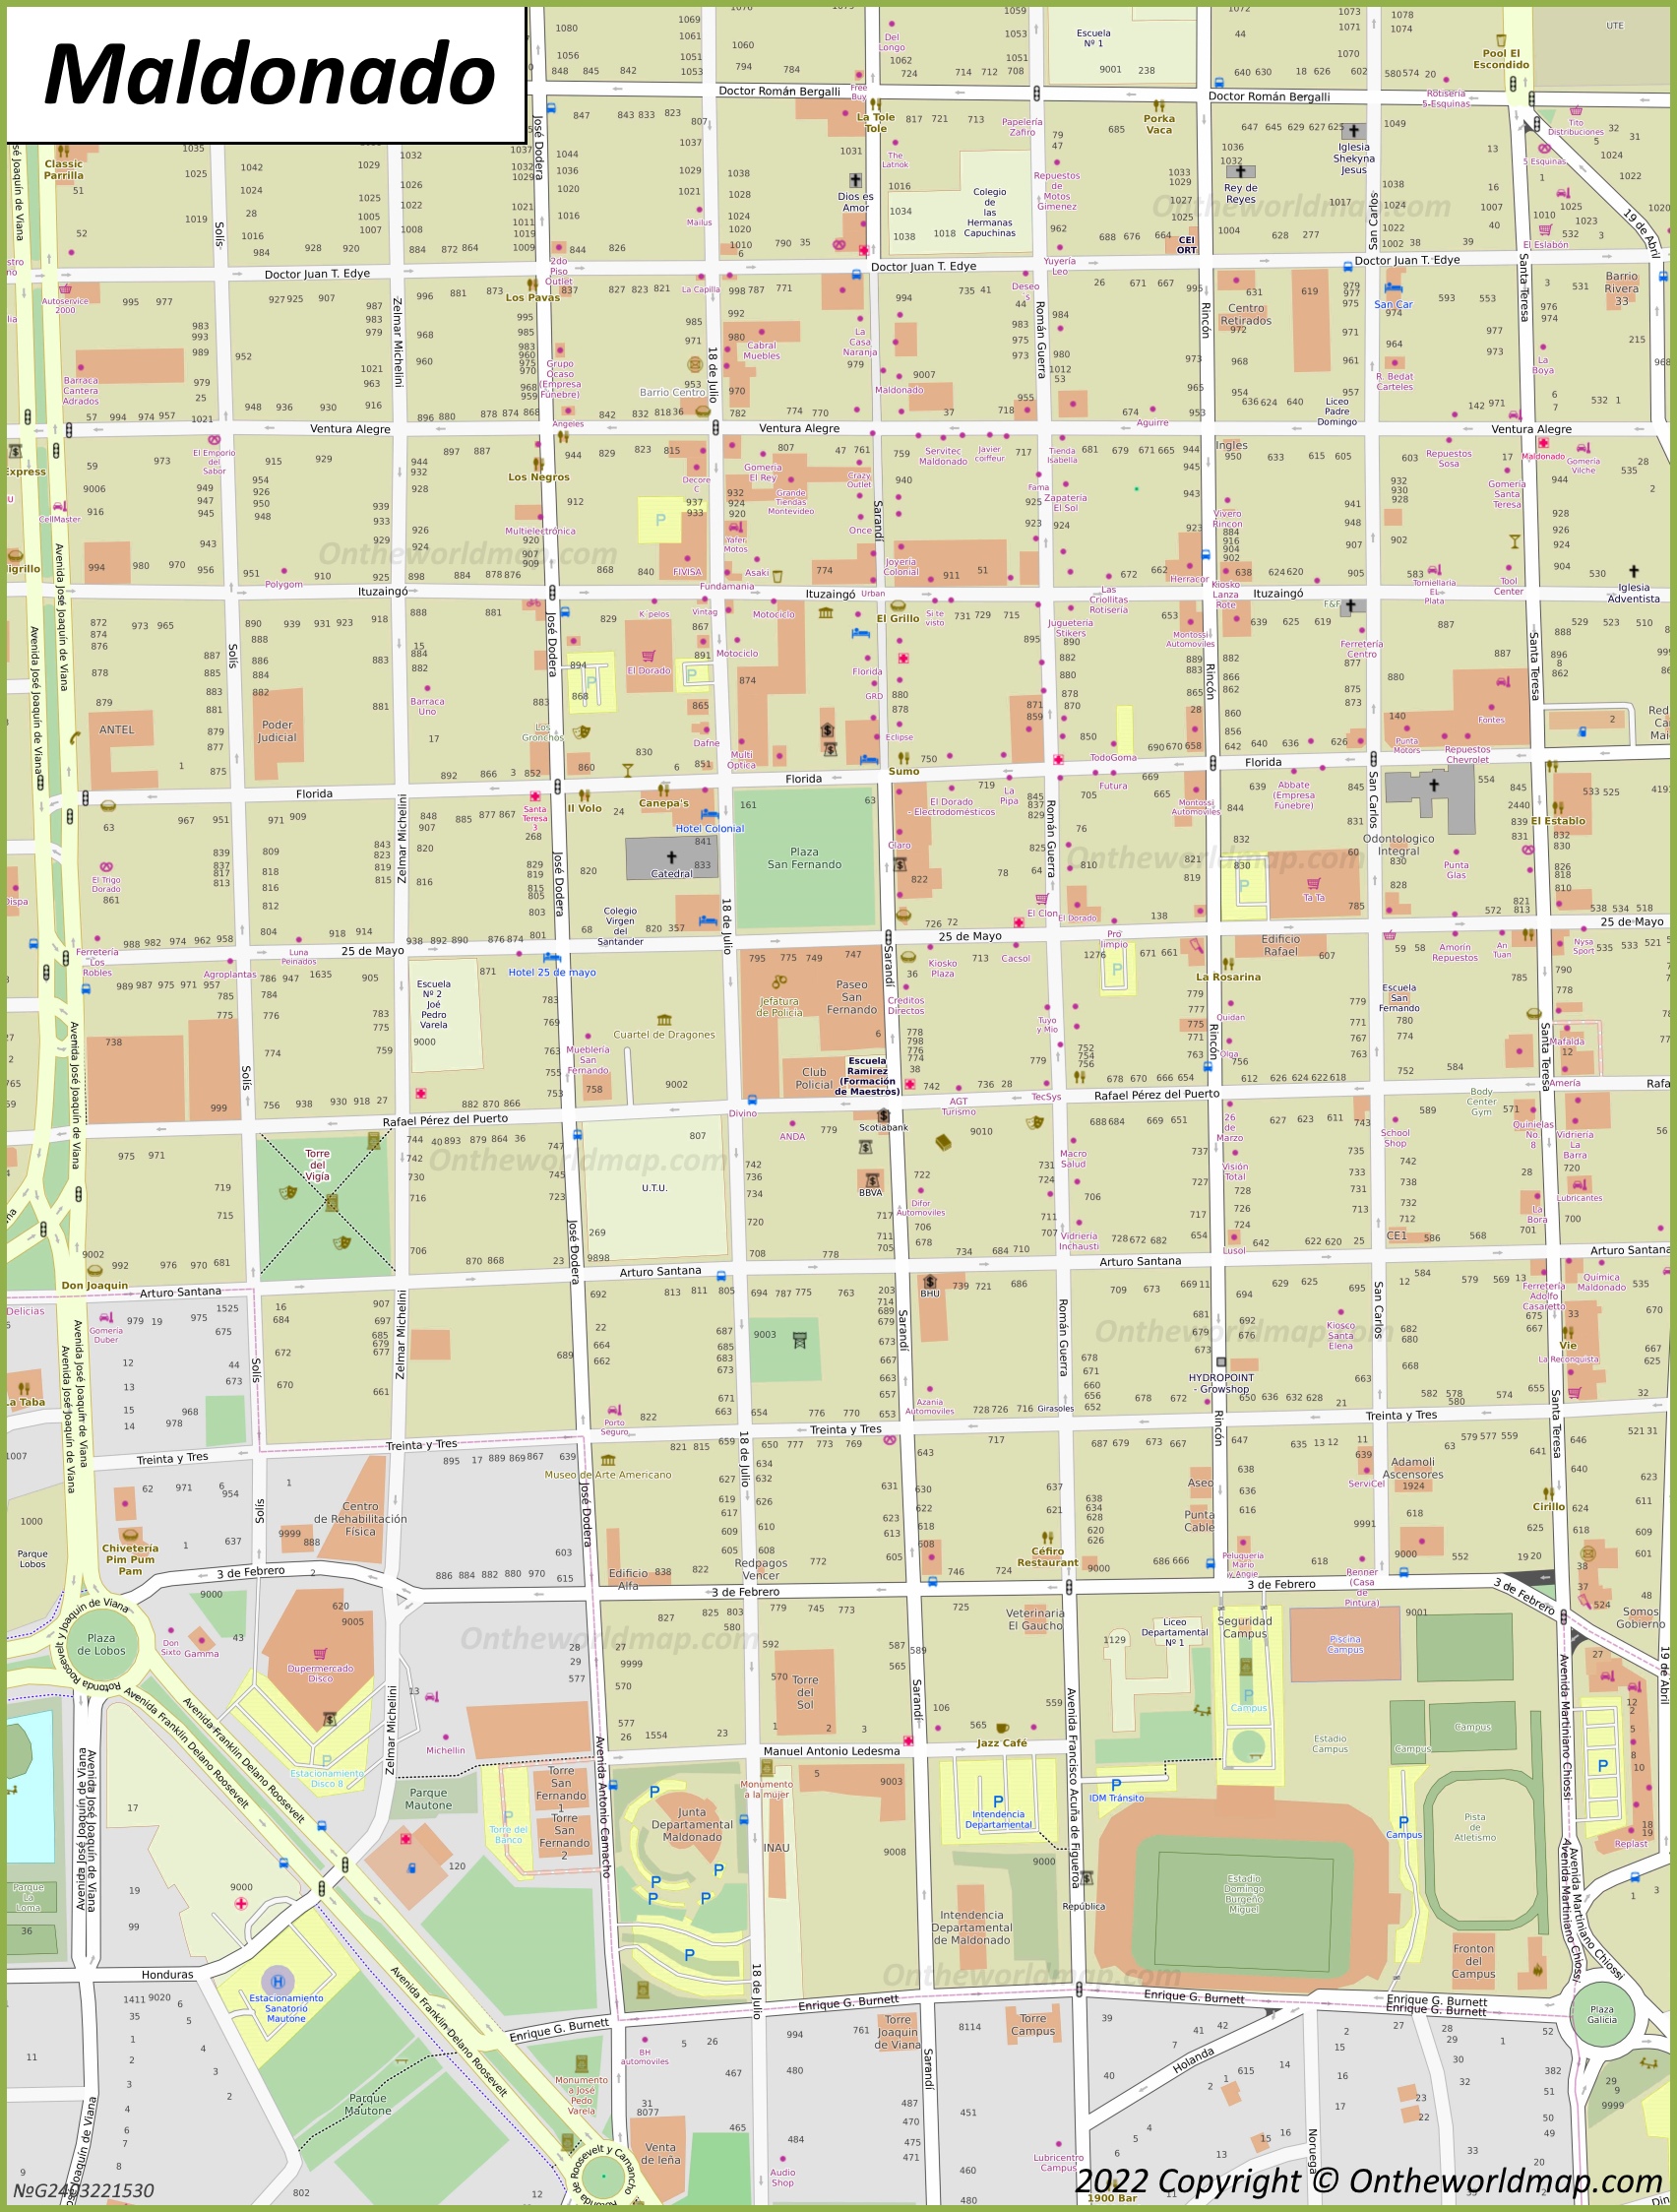 Maldonado - Mapa del centro